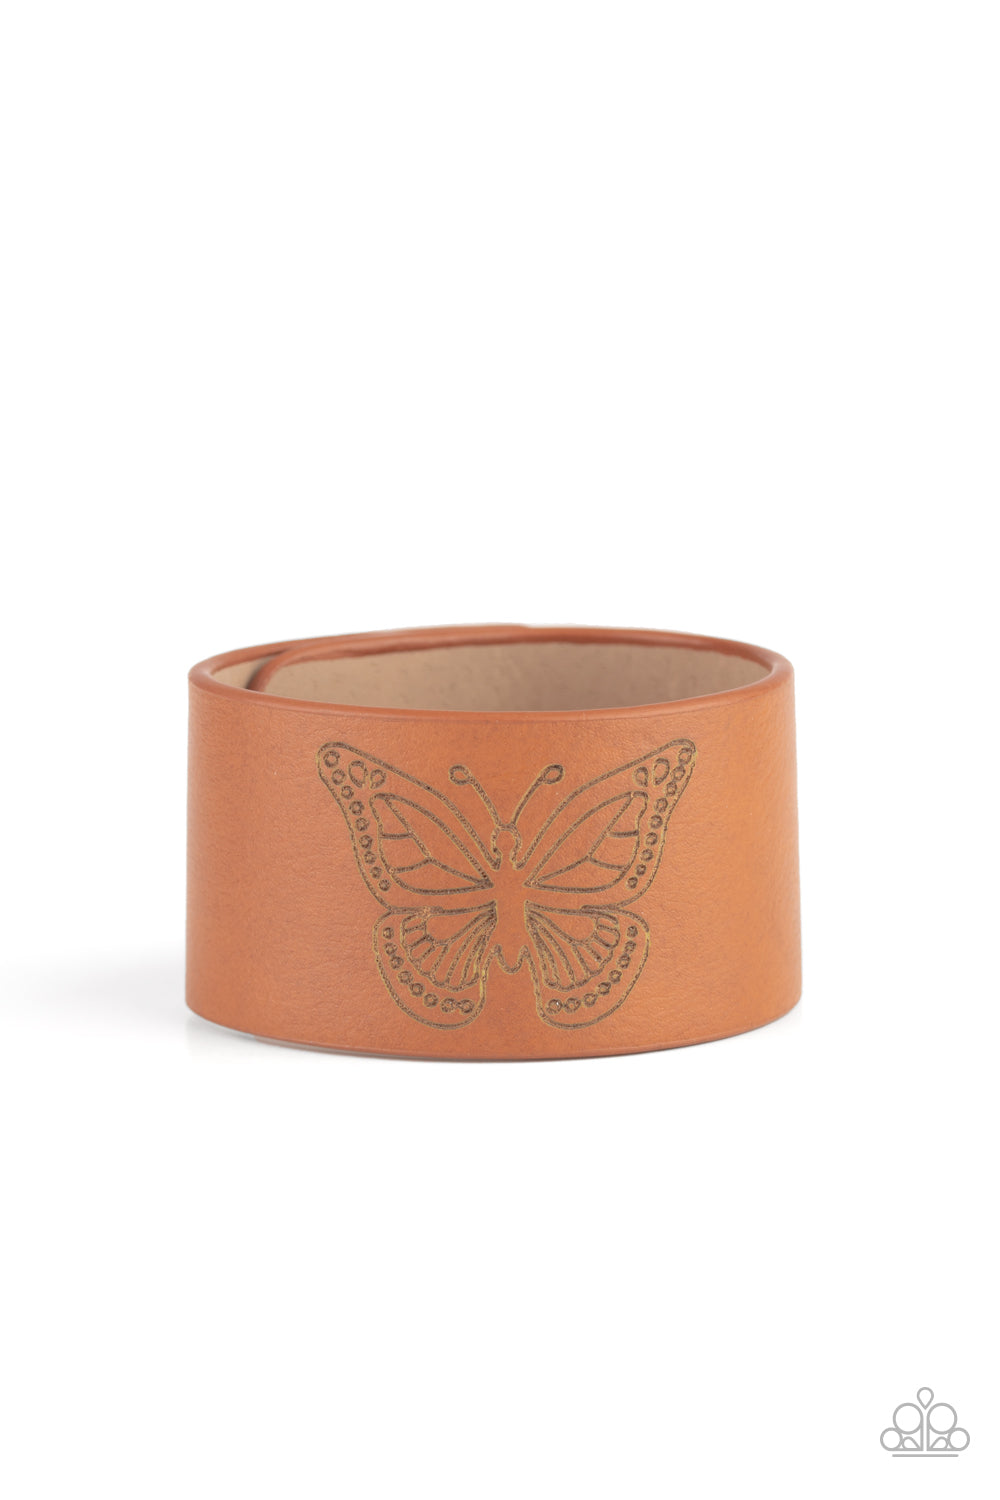 Flirty Flutter Brown Urban Bracelet - Daria's Blings N Things